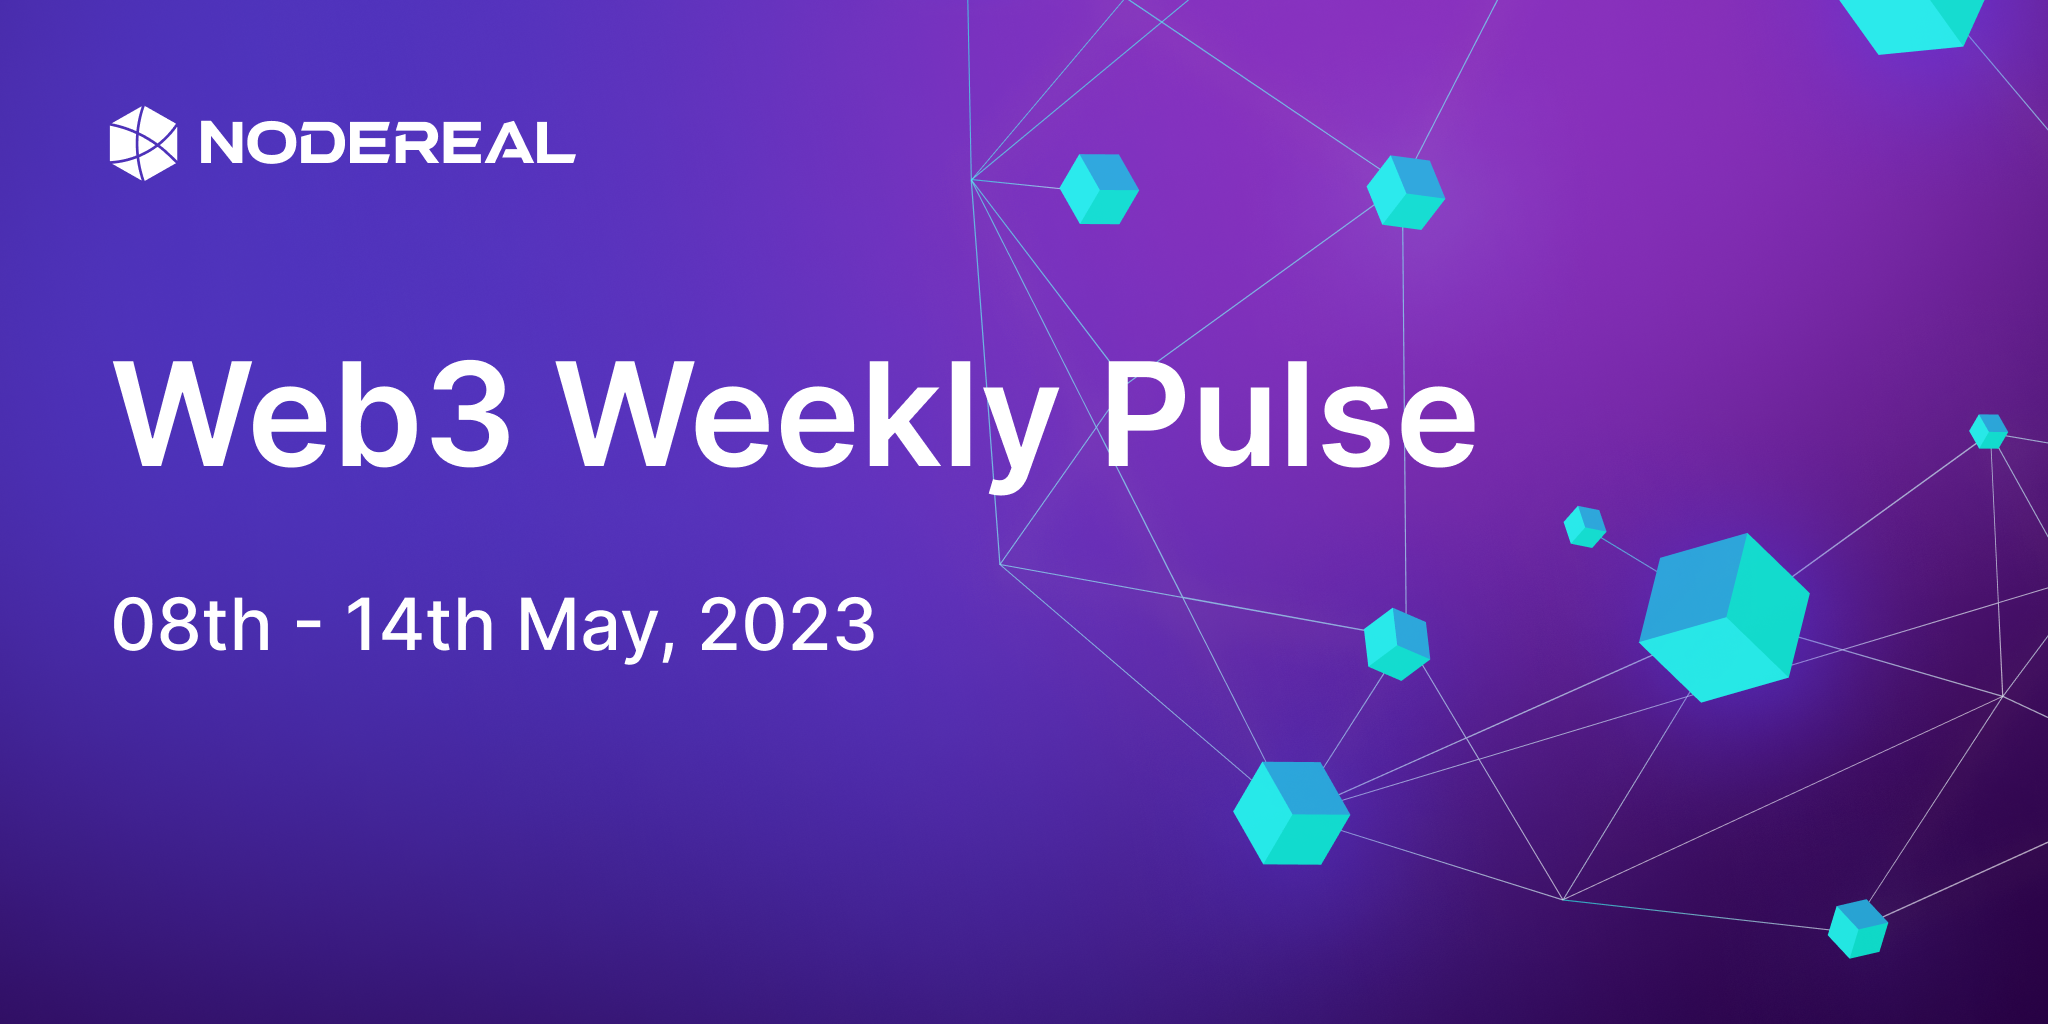 Web3 Weekly Pulse: 08th - 14th May